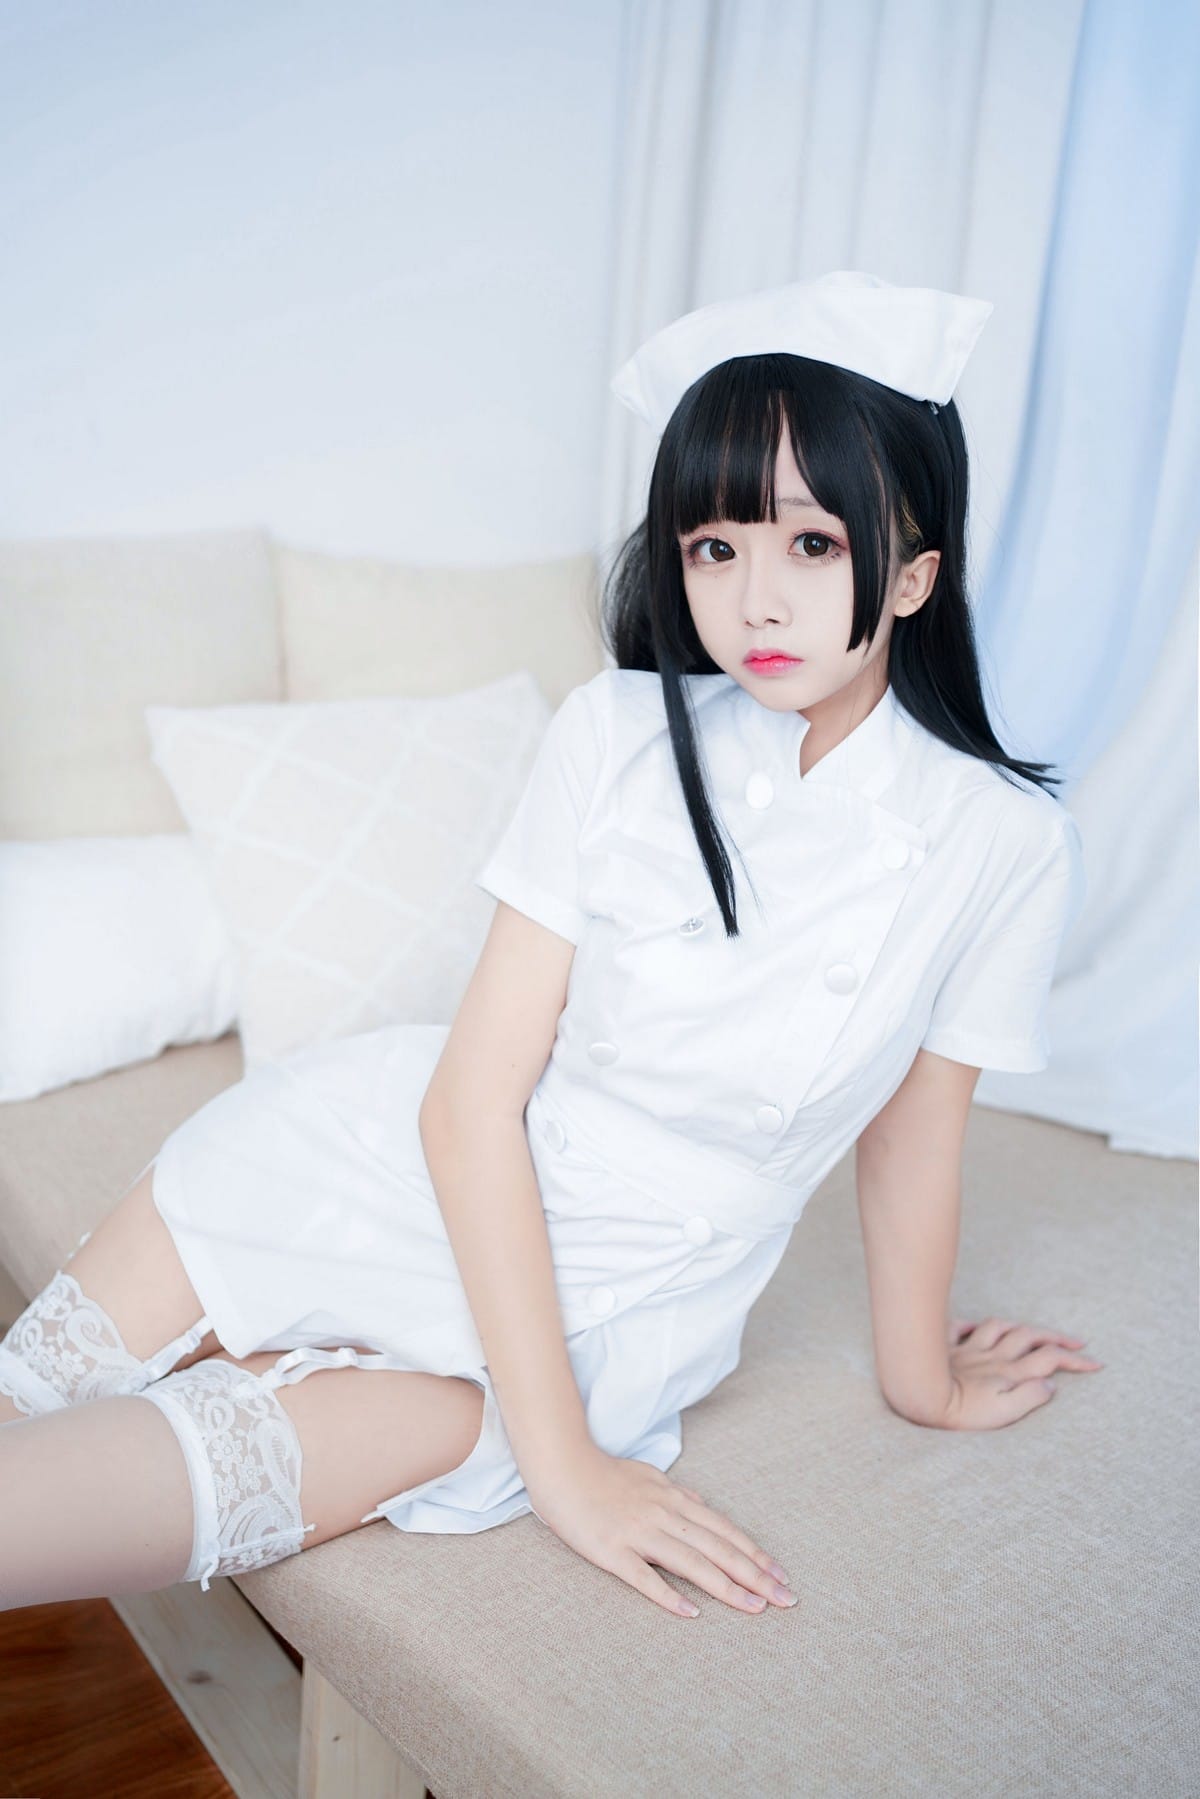 动漫博主日奈娇纯白护士装搭配白丝吊袜私房半脱写真